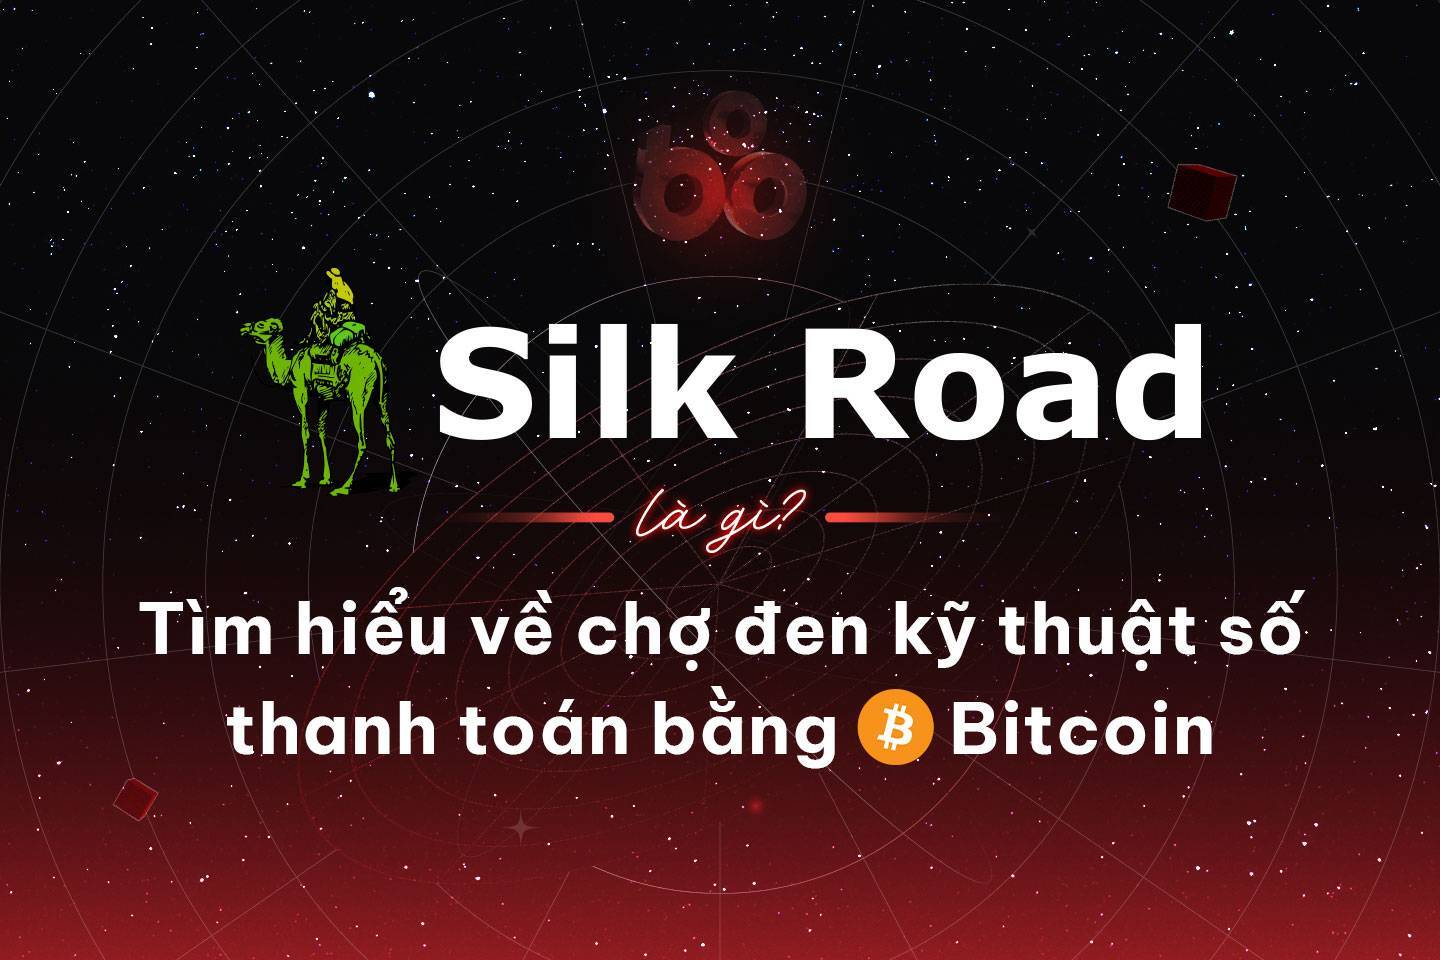 Silk Road Là Gì Tìm Hiểu Về Chợ Đen Kỹ Thuật Số Thanh Toán Bằng Bitcoin